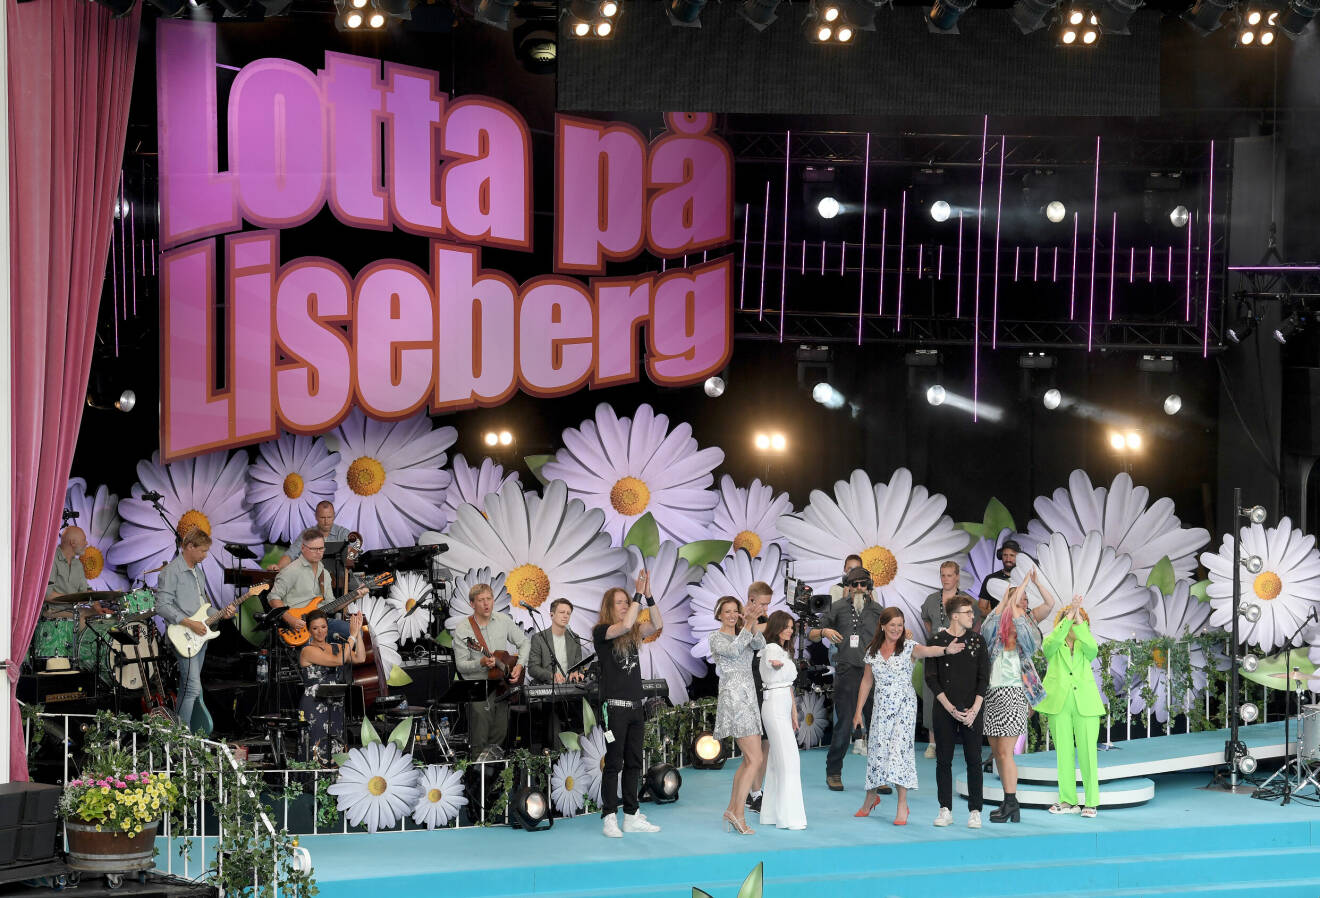 Lotta Engberg har programlett allsången på Liseberg sedan starten år 2004.